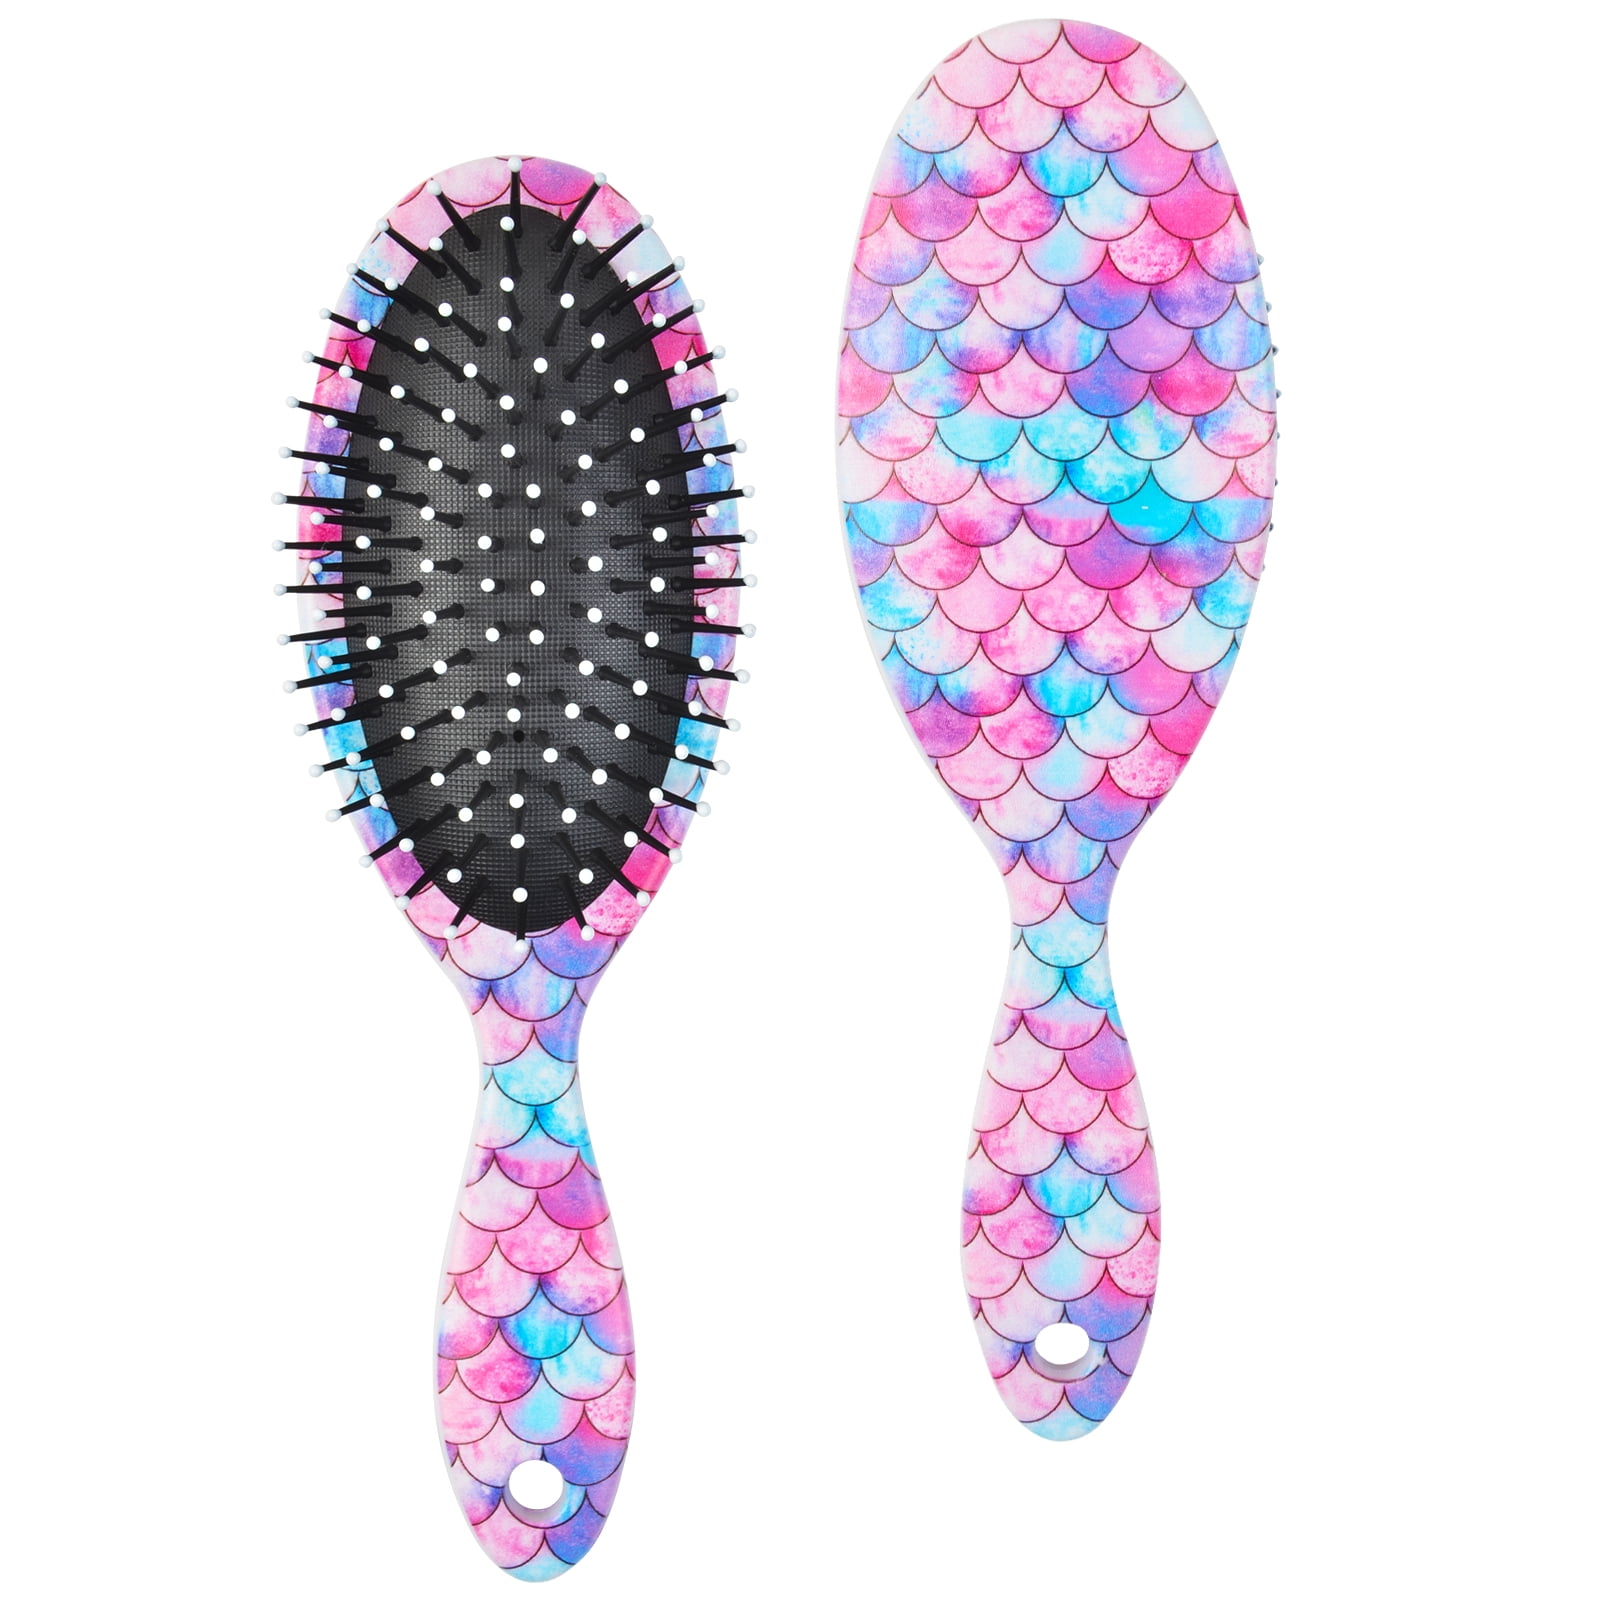 Ausletie Wet Hair Brushes for Kids, Girls Detangling Brush for